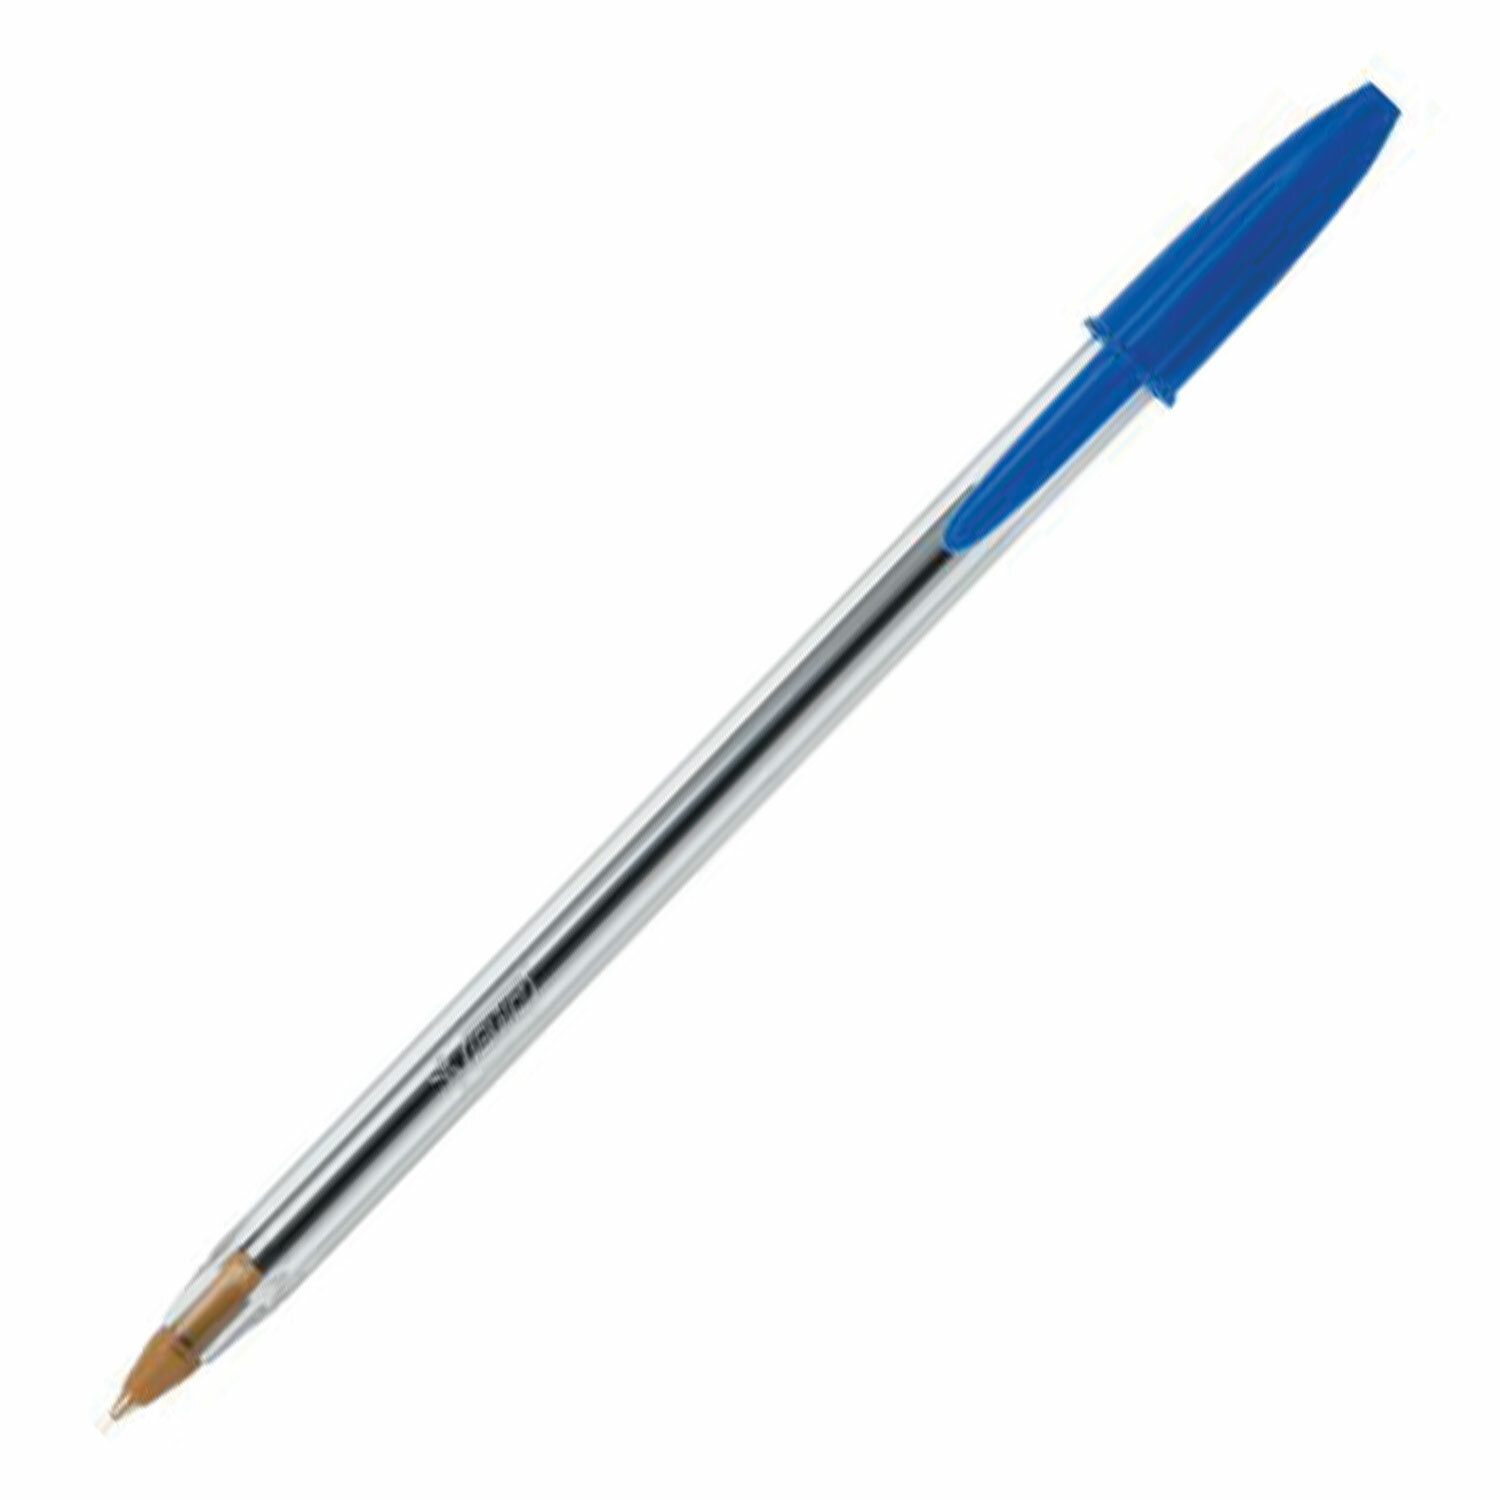 Ручка шариковая BIC CRISTAL корпус прозрач. син. детали, синяя